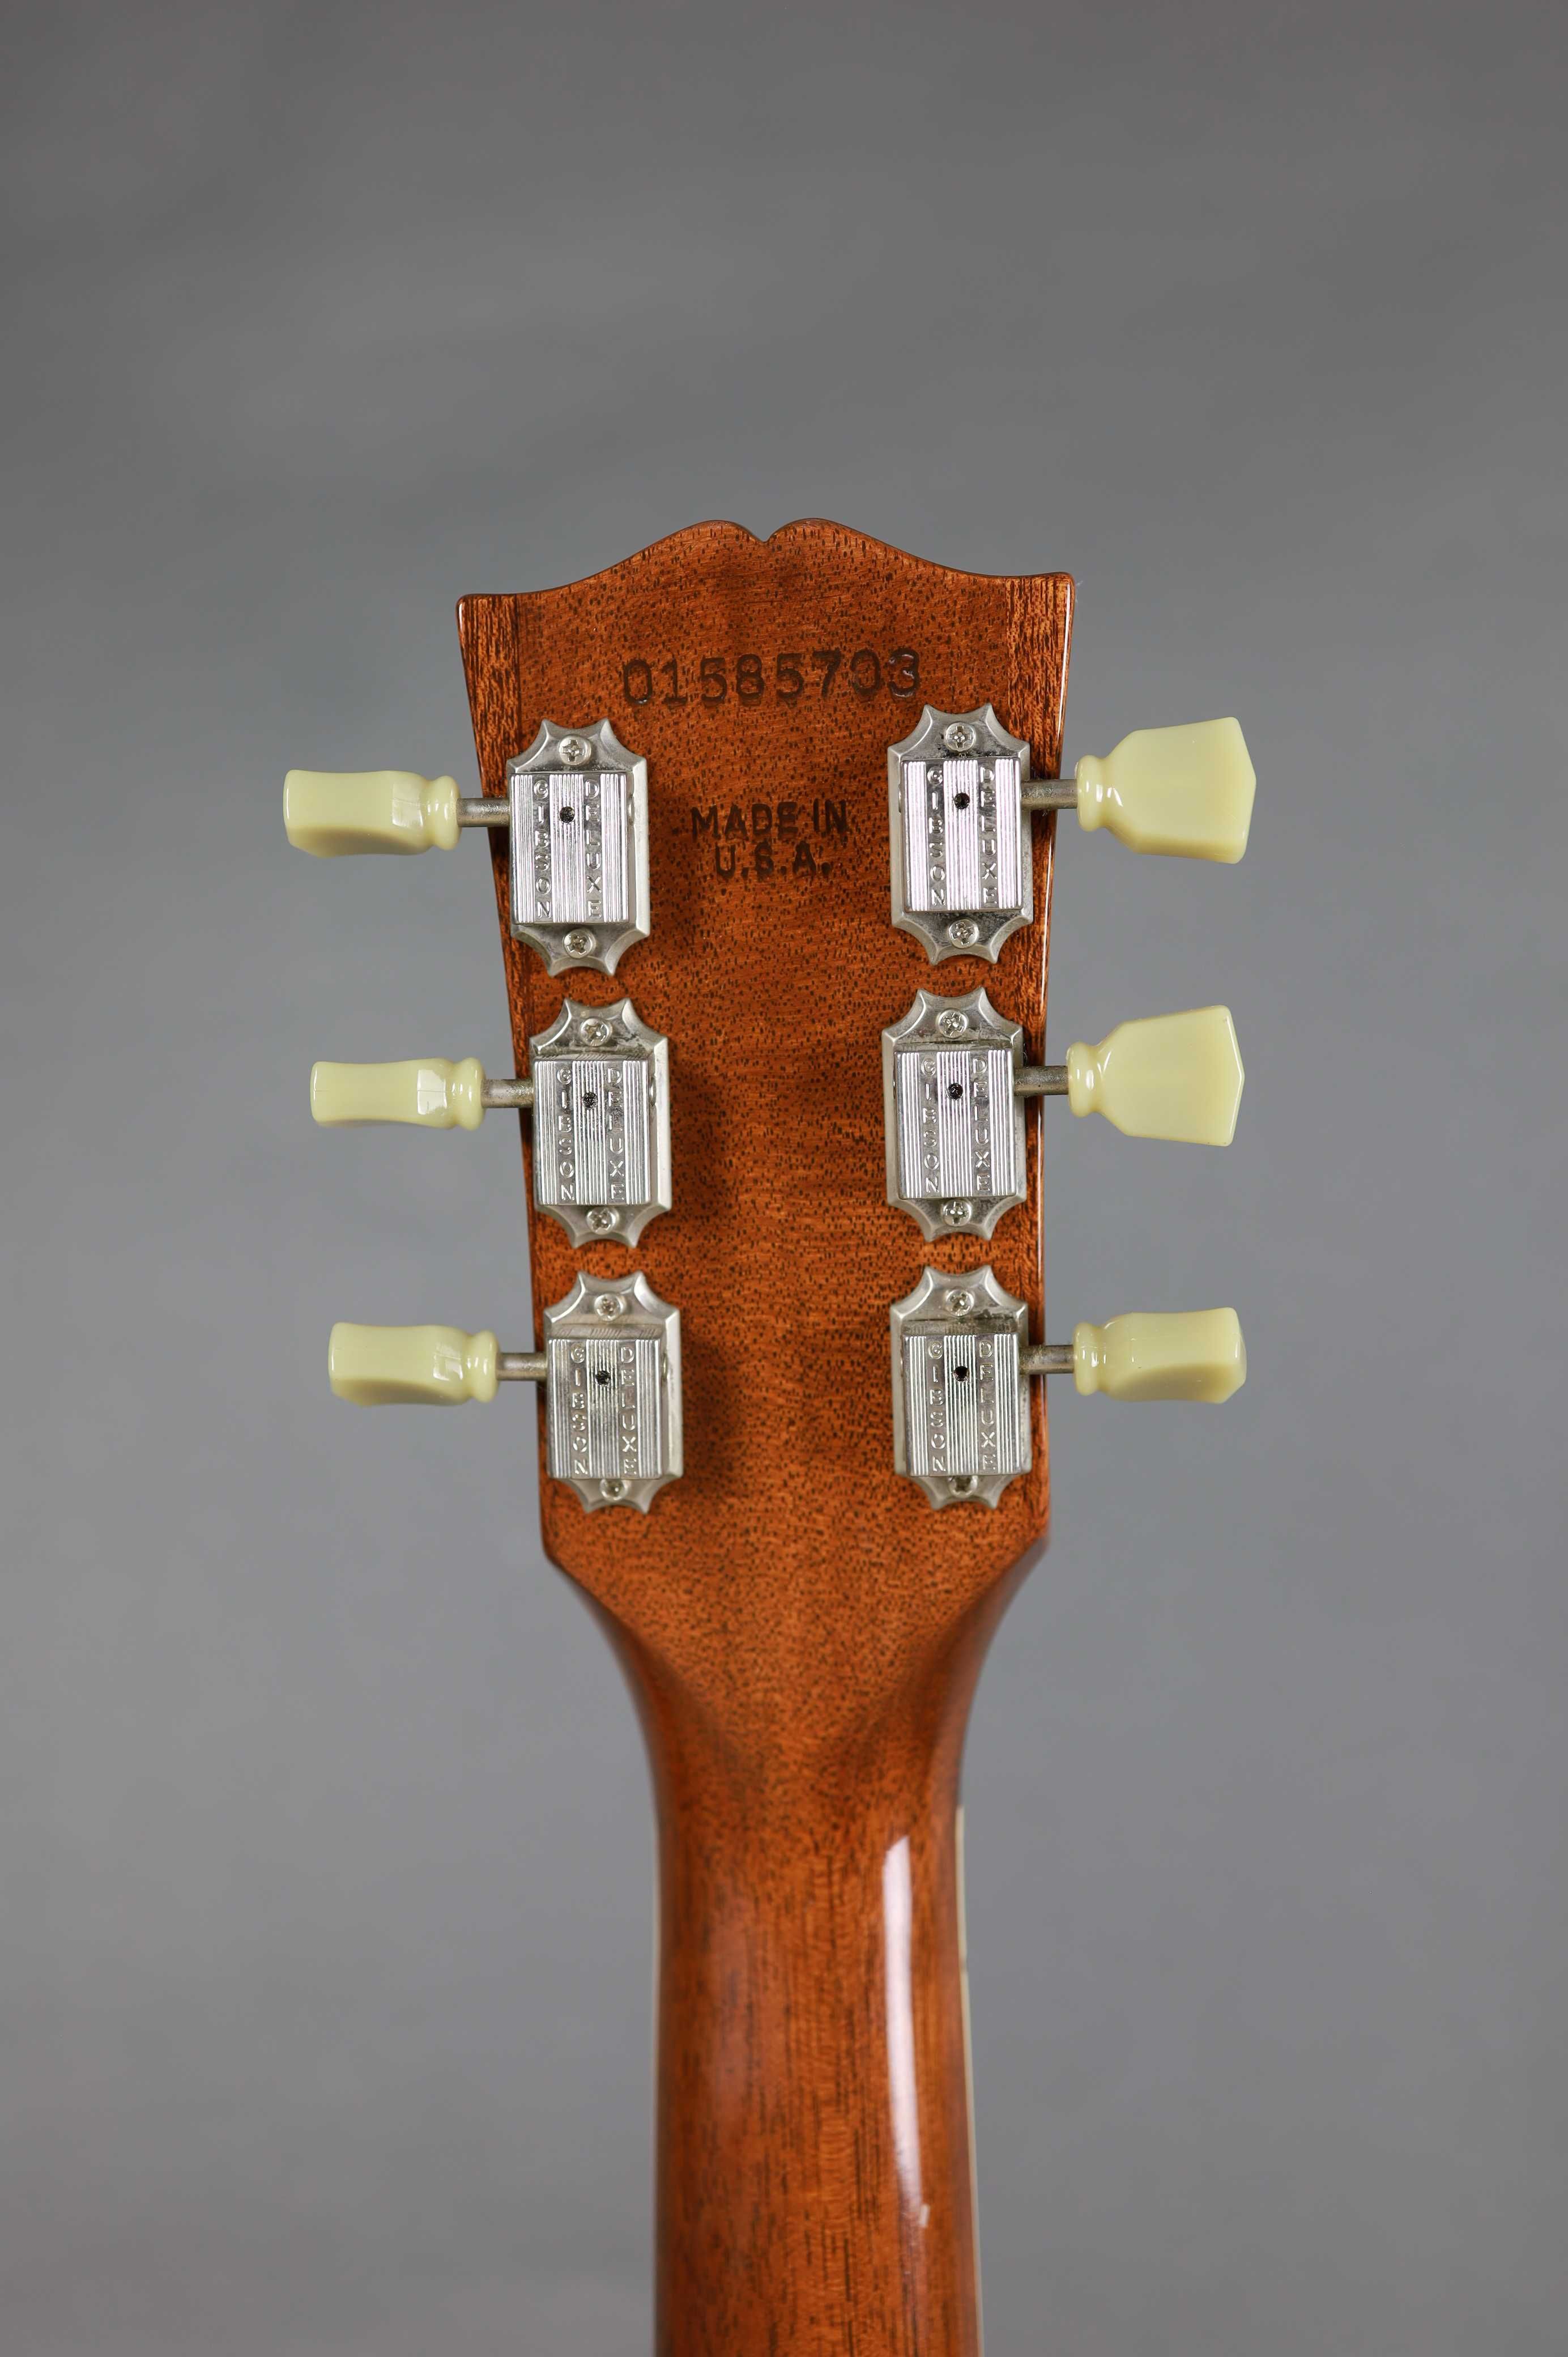 Gibson ES 175 '2005 - Hollowbody банка - Гітара, ВІДЕО